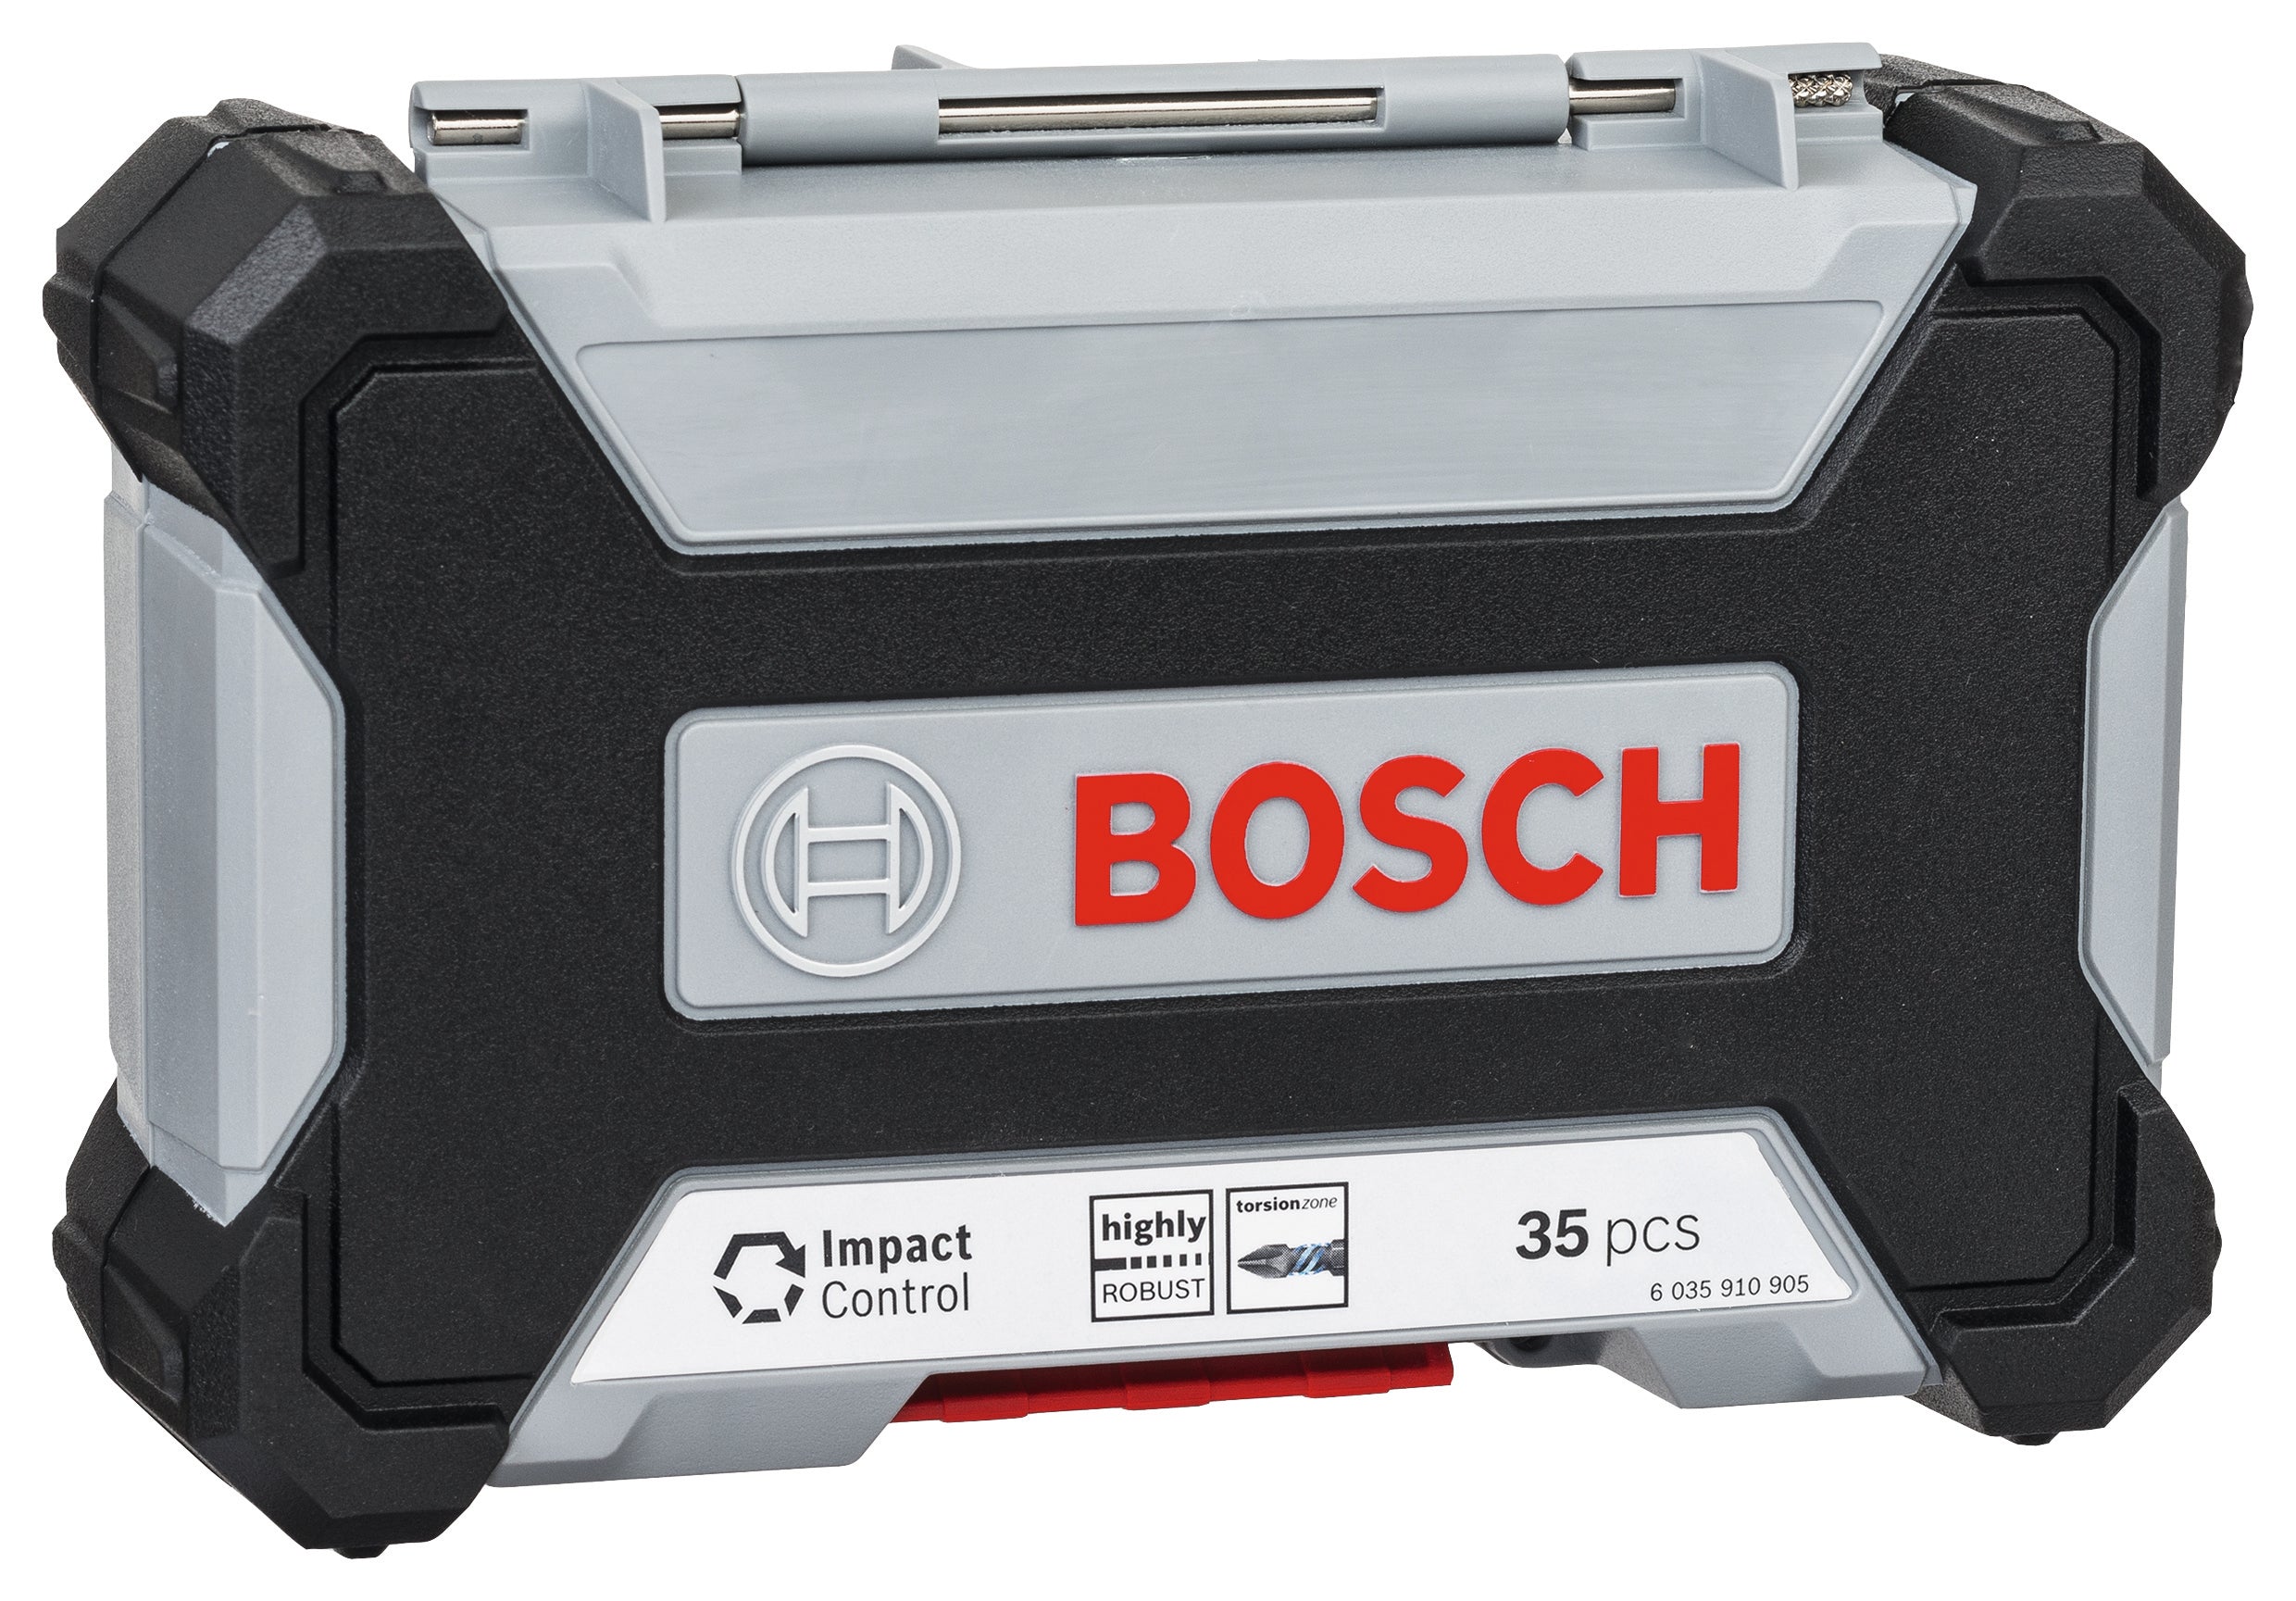 Bosch 35-teiliges Impact Control MultiConstruction und Schrauberbit-Set